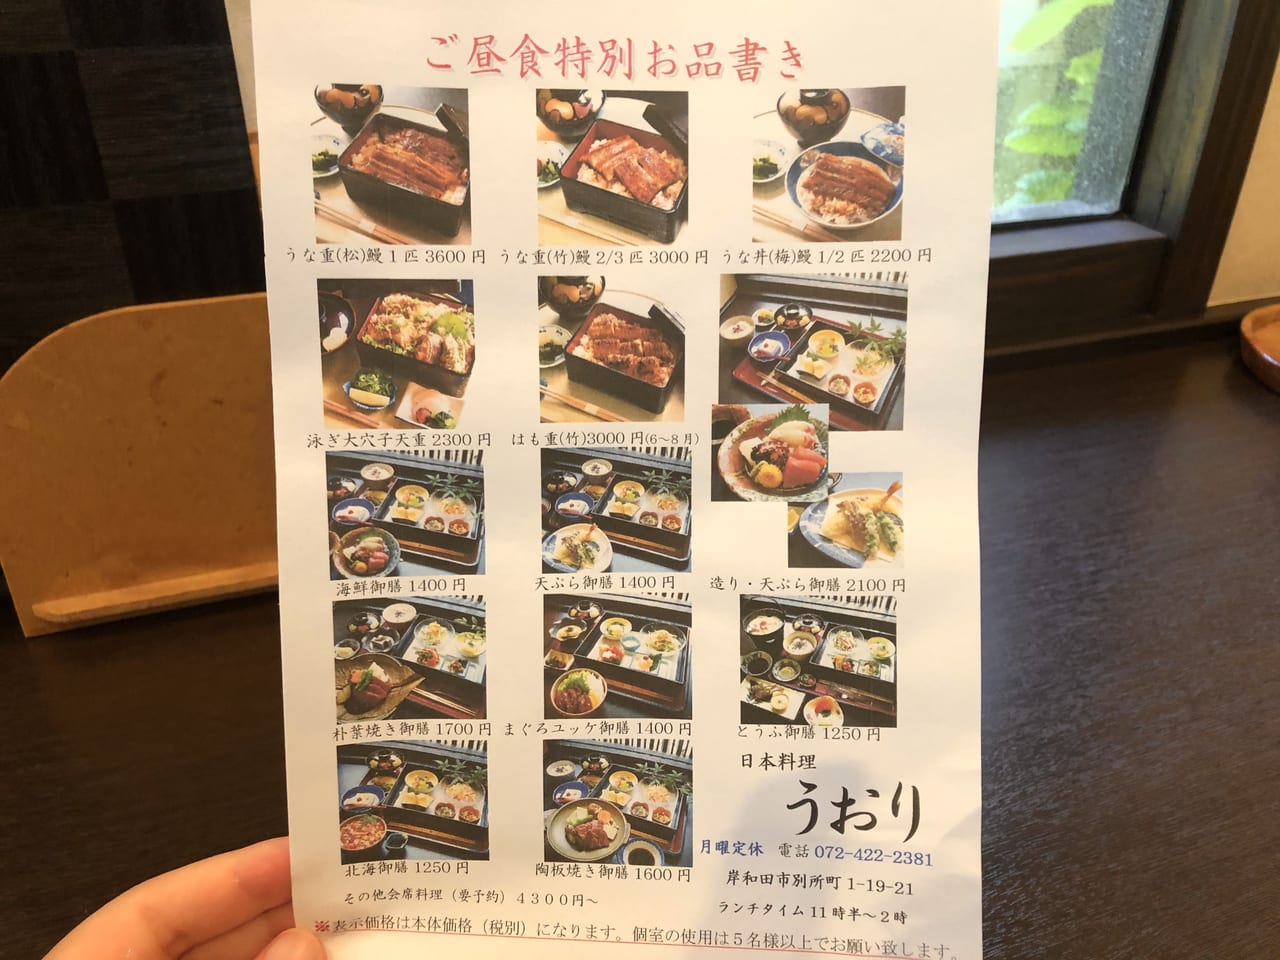 岸和田市 ランチは1 250円 懐石料理店だけどお手頃価格 日本料理 うおり にてお上品なランチタイムを過ごしませんか 号外net 岸和田 市 貝塚市